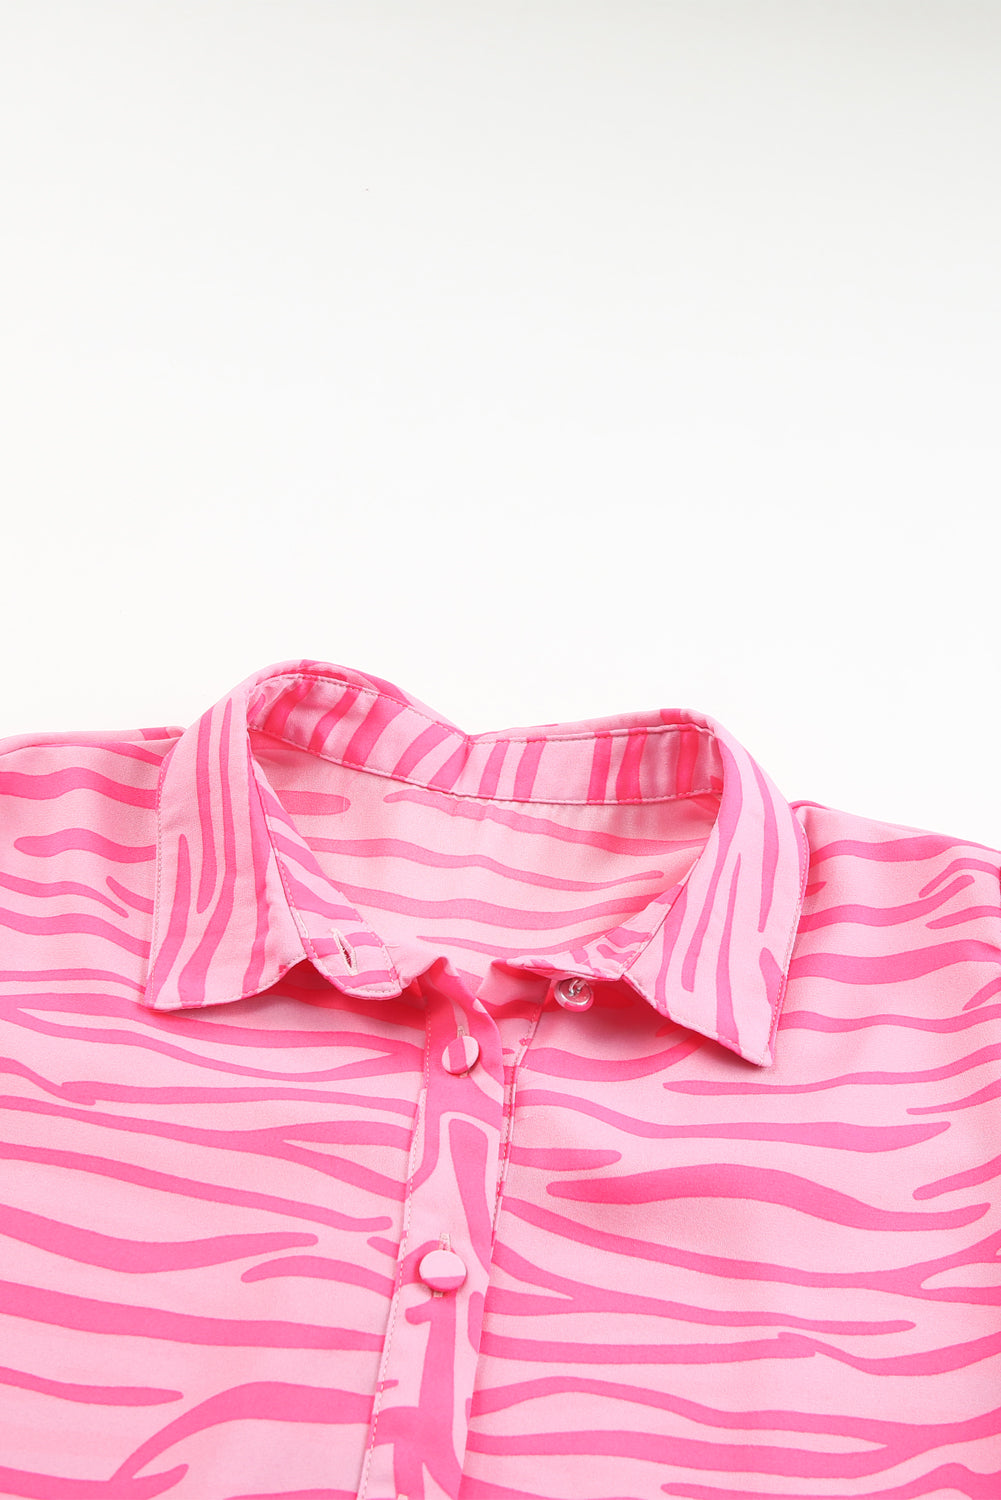 Rosafarbenes Hemd mit Zebrastreifen-Print und Laternenärmeln